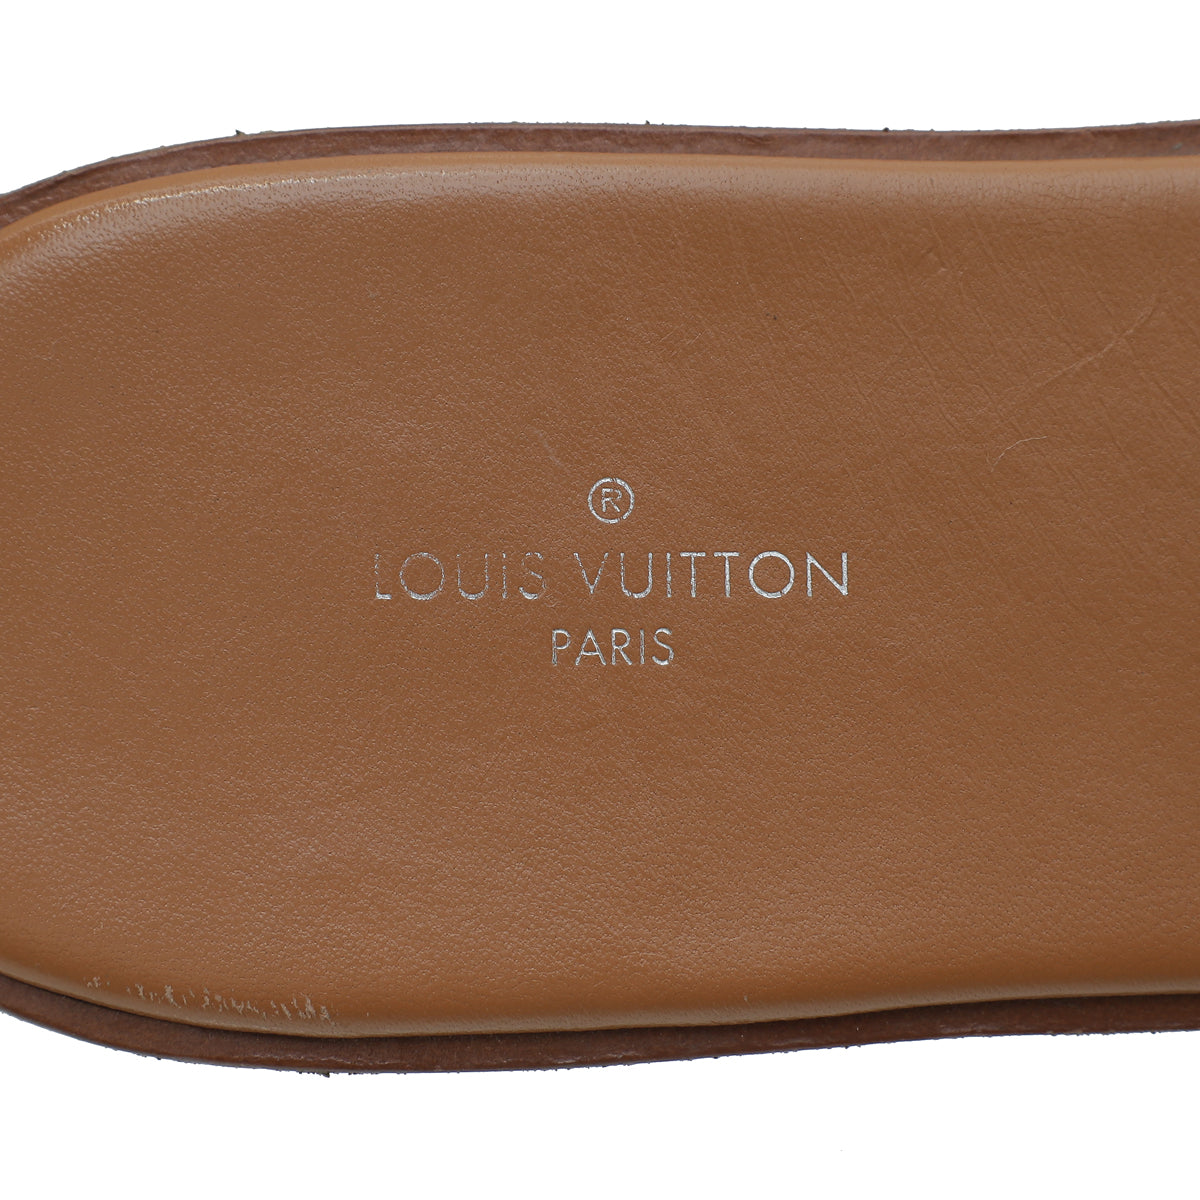 Louis Vuitton Blue LV Pop Monogram Canvas Lock It Flat Slide